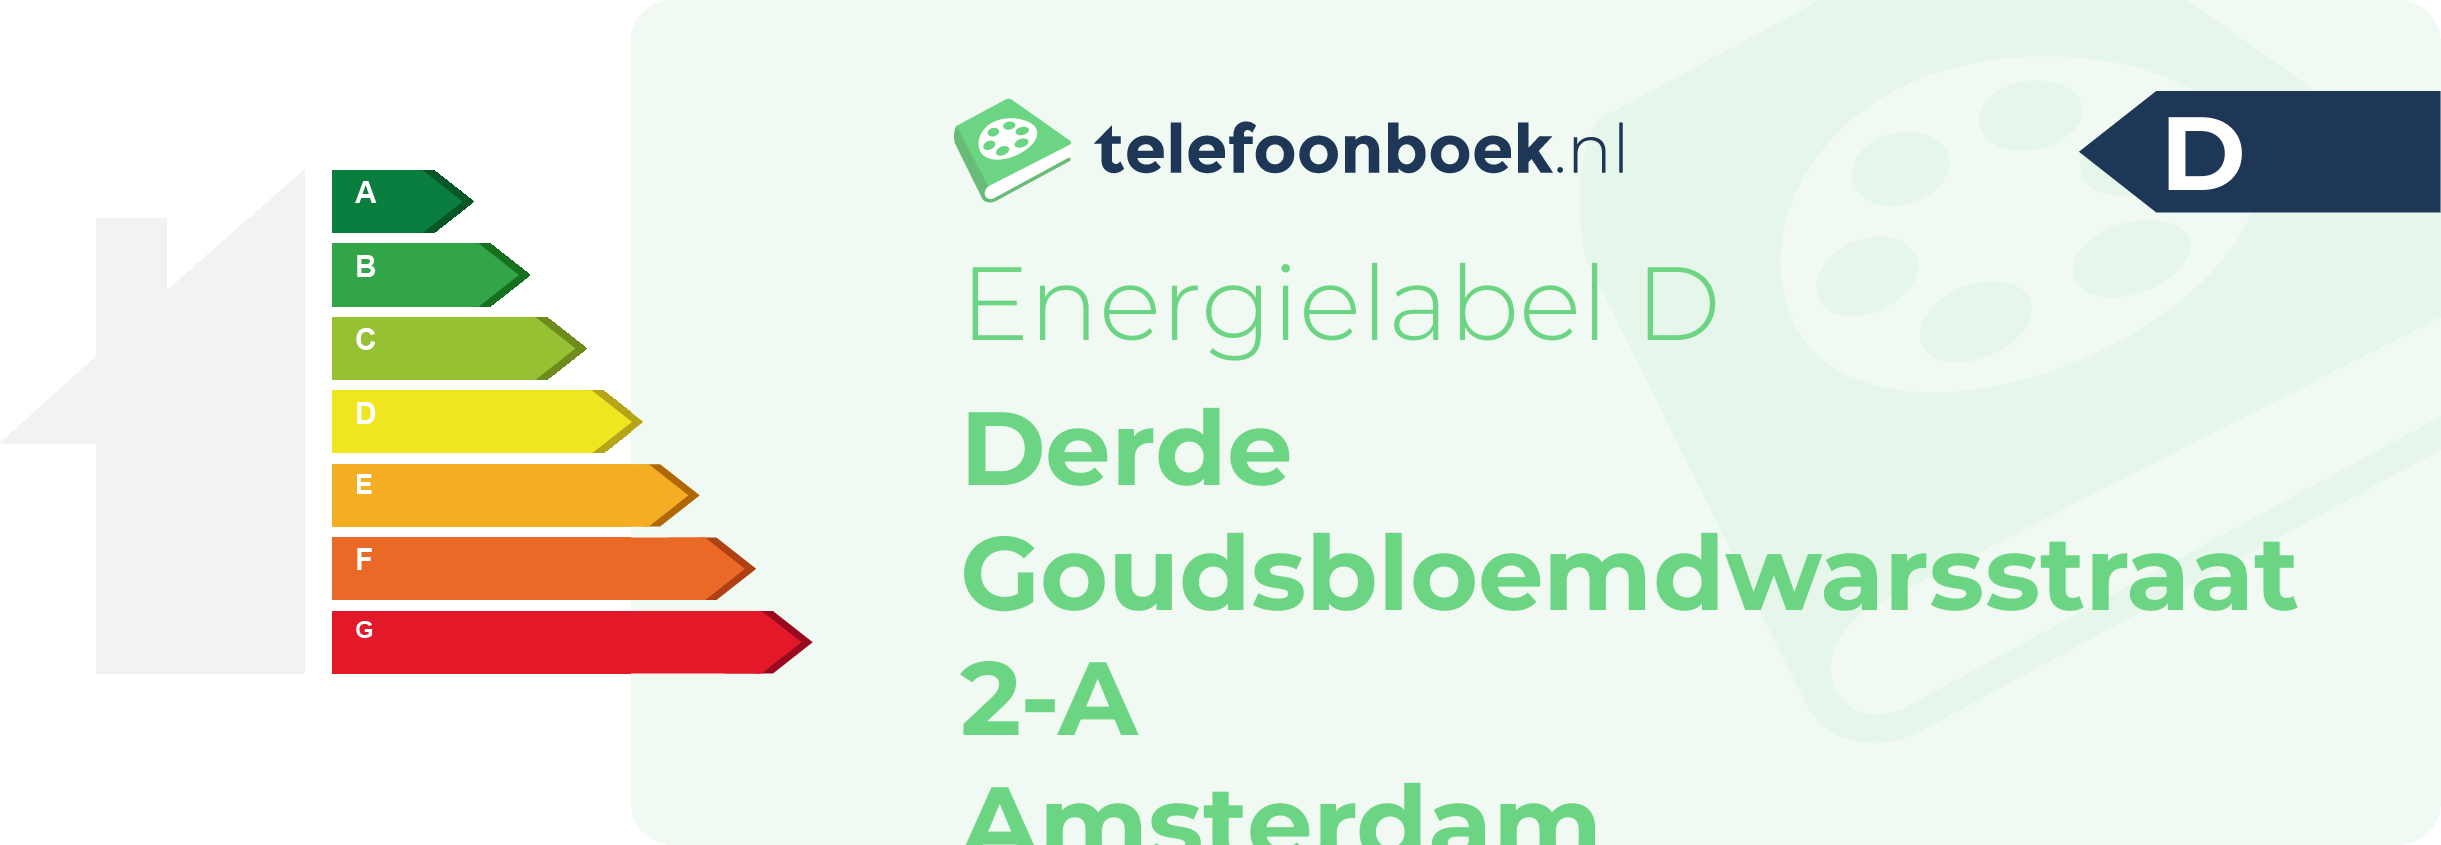 Energielabel Derde Goudsbloemdwarsstraat 2-A Amsterdam